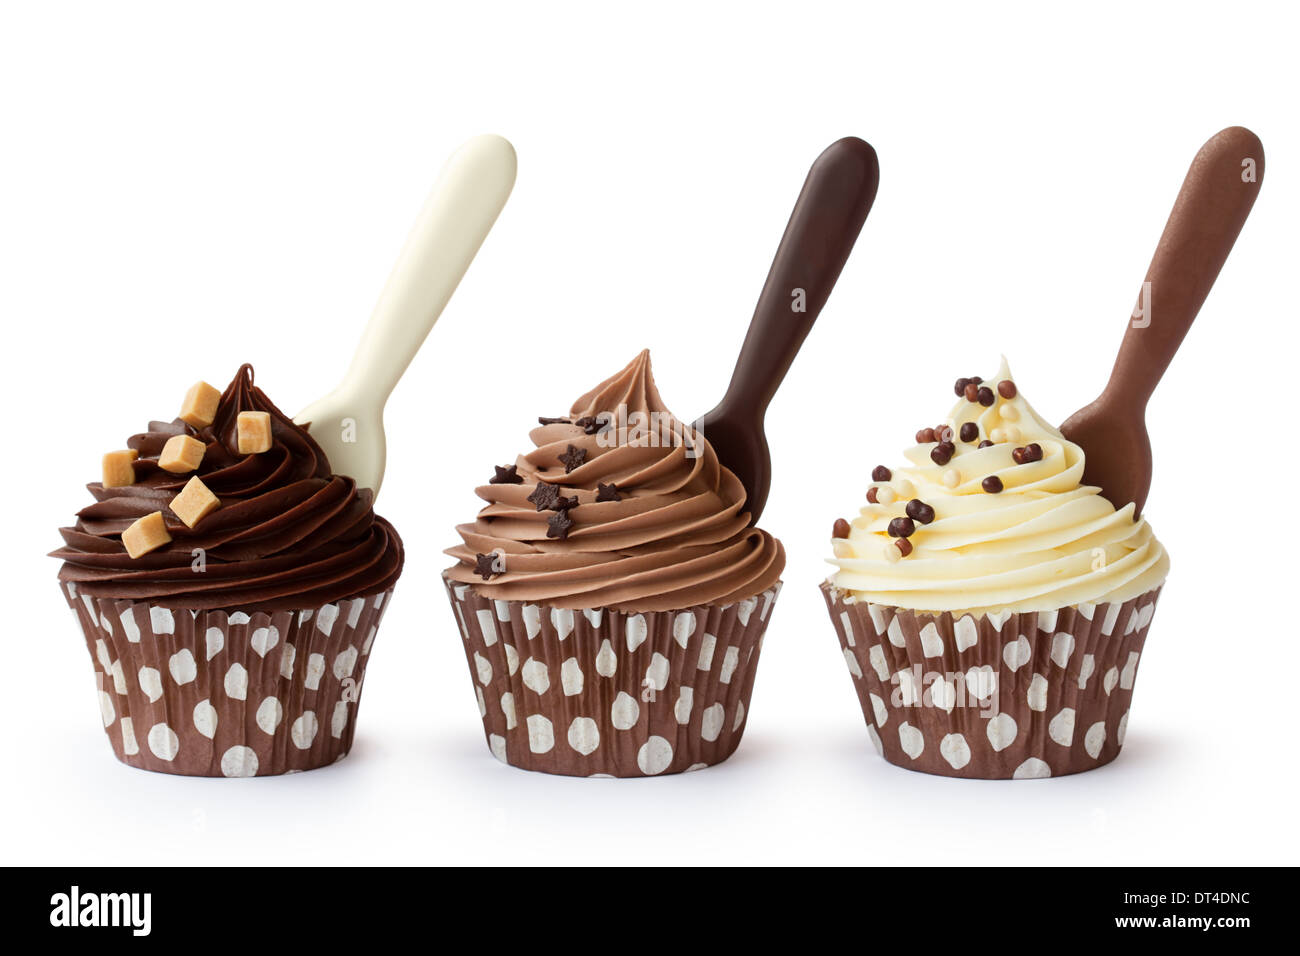 Muffins mit weißer, Milch- und dunkle Schokolade Zuckerguss verziert Stockfoto